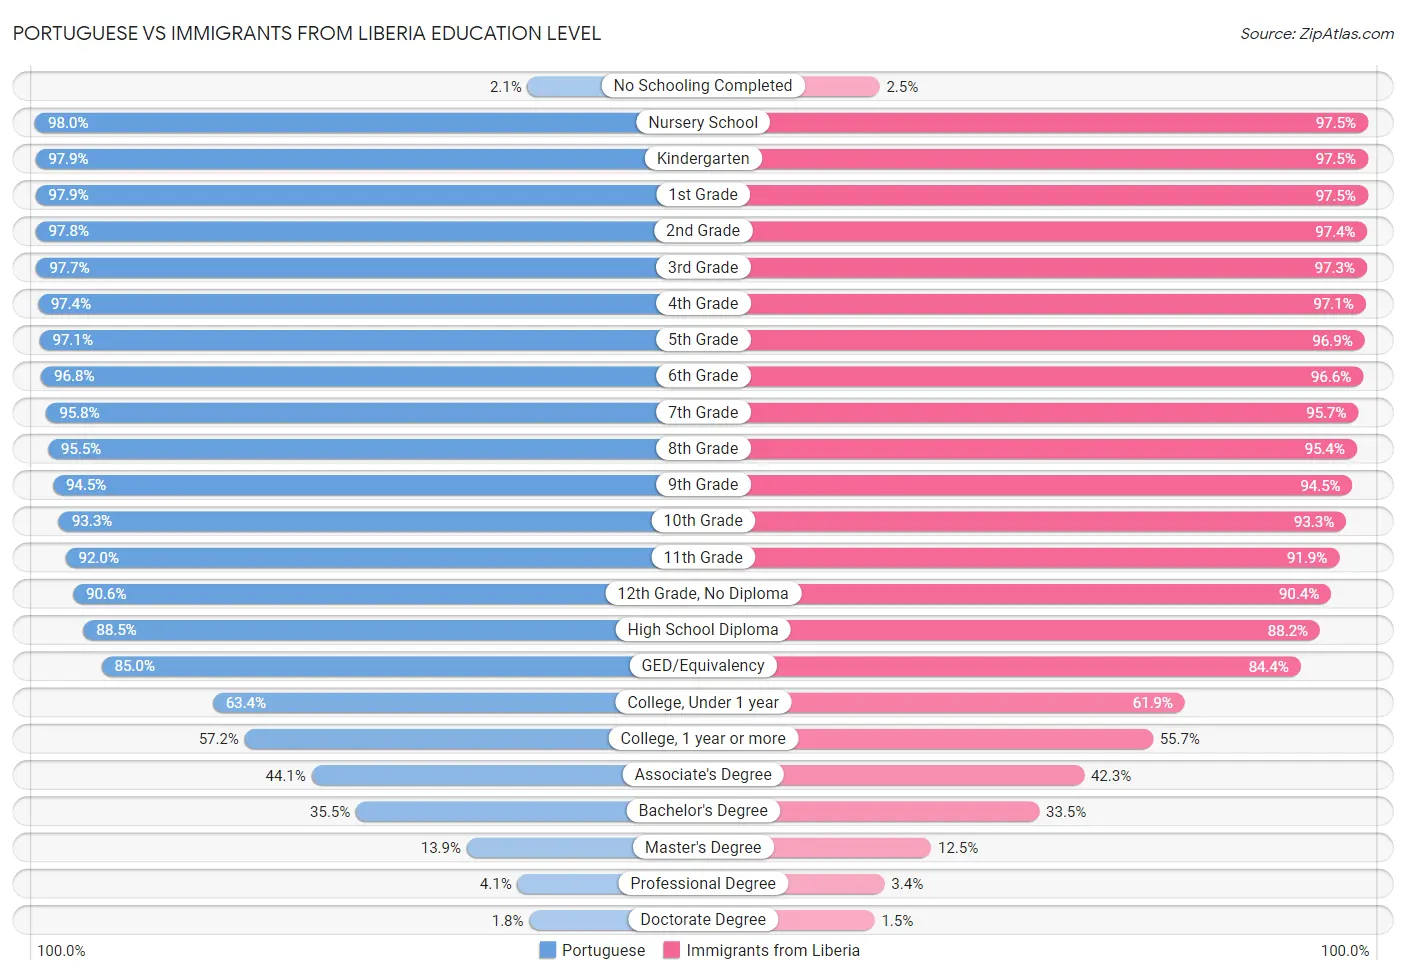 Portuguese vs Immigrants from Liberia Education Level